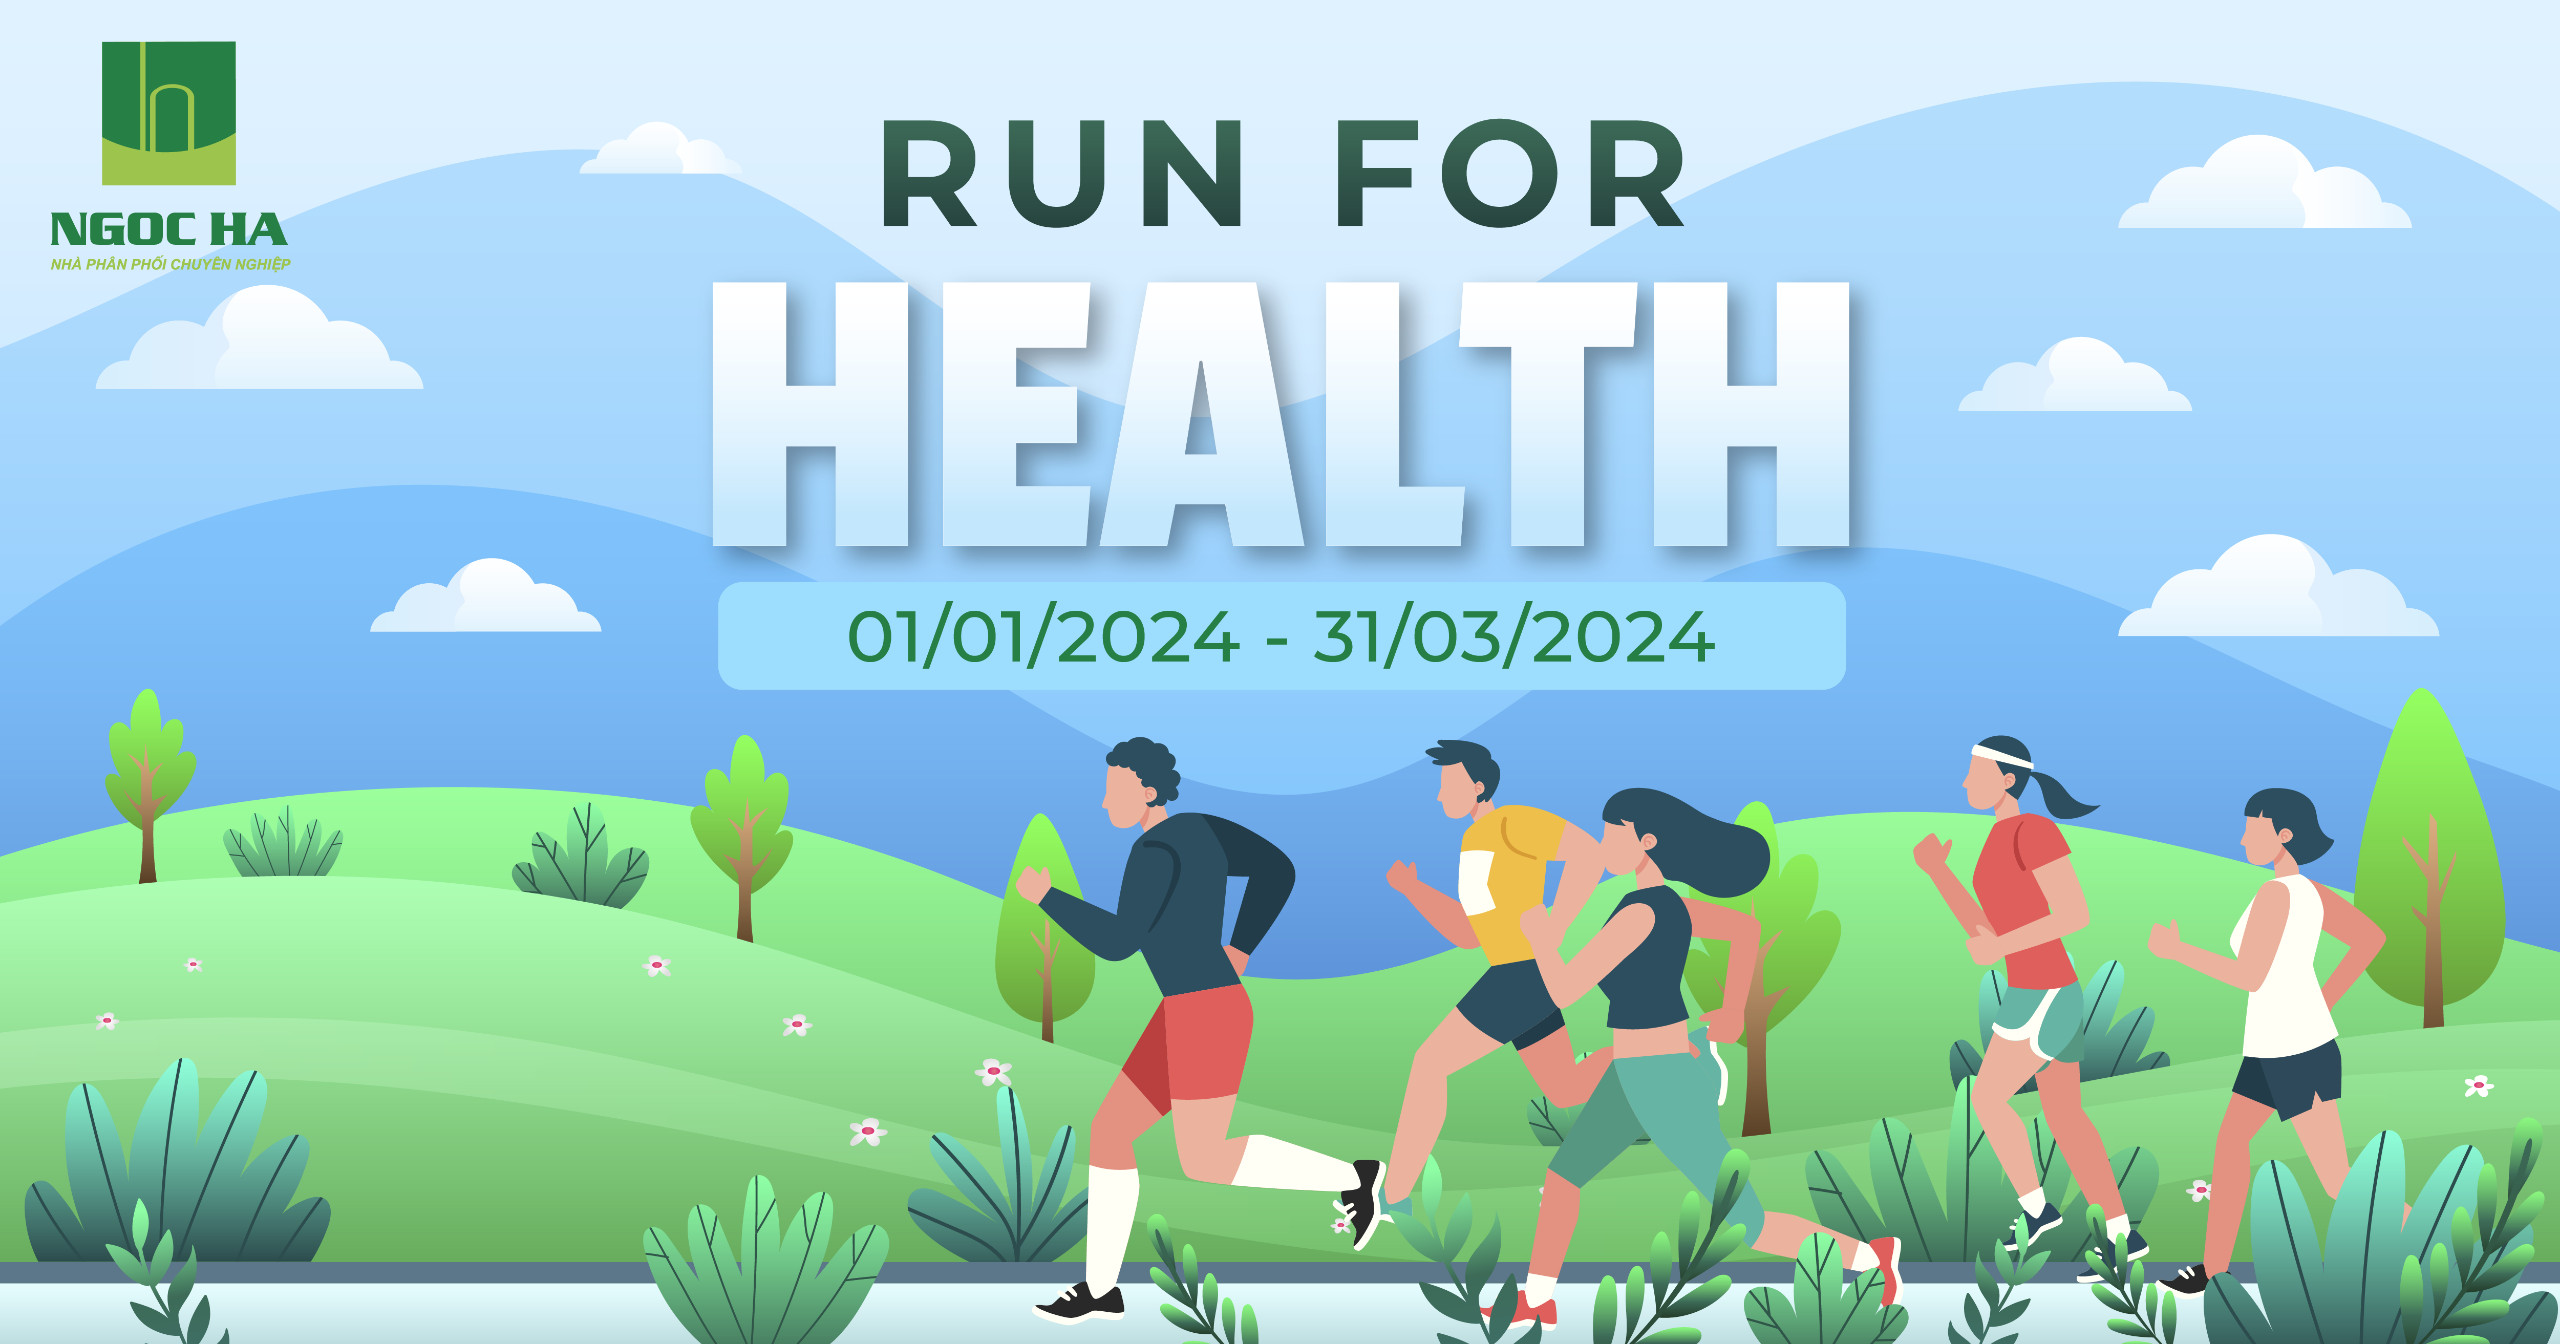 CHẠY VÌ SỨC KHOẺ RUN FOR HEALTH 2024